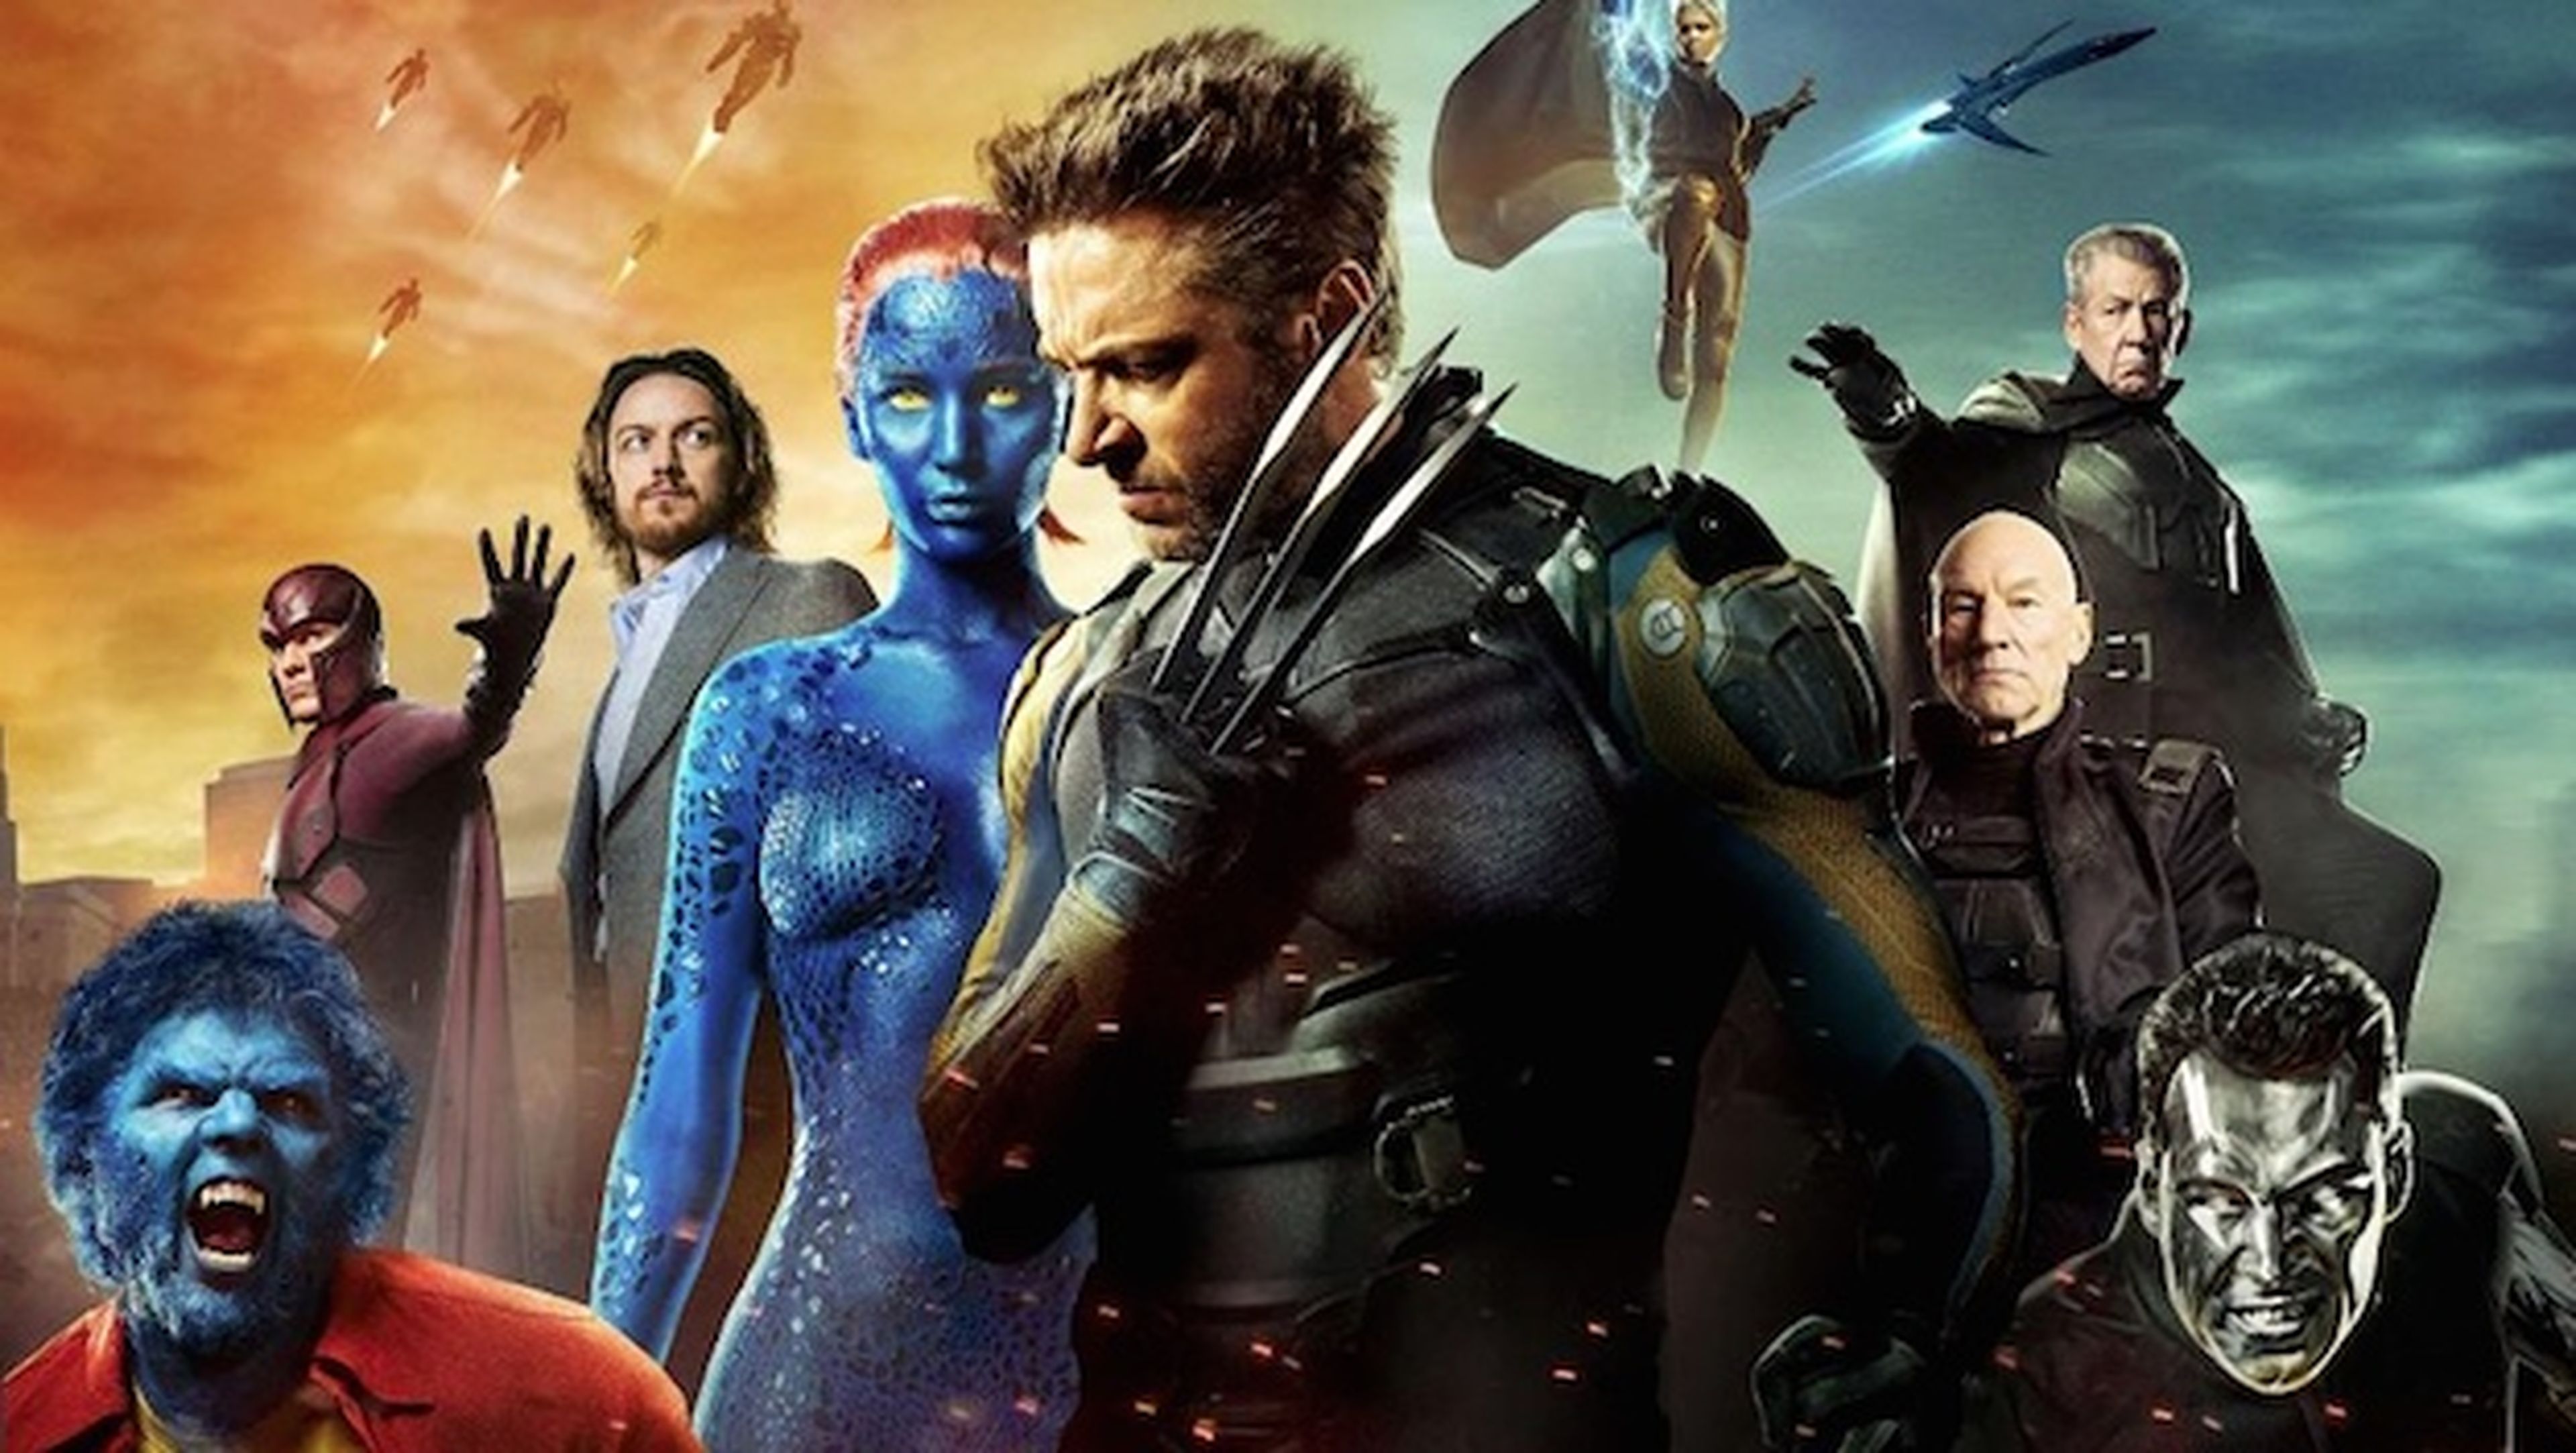 Filtrado el tráiler de X-Men: Apocalypse visto en la Comic-Con